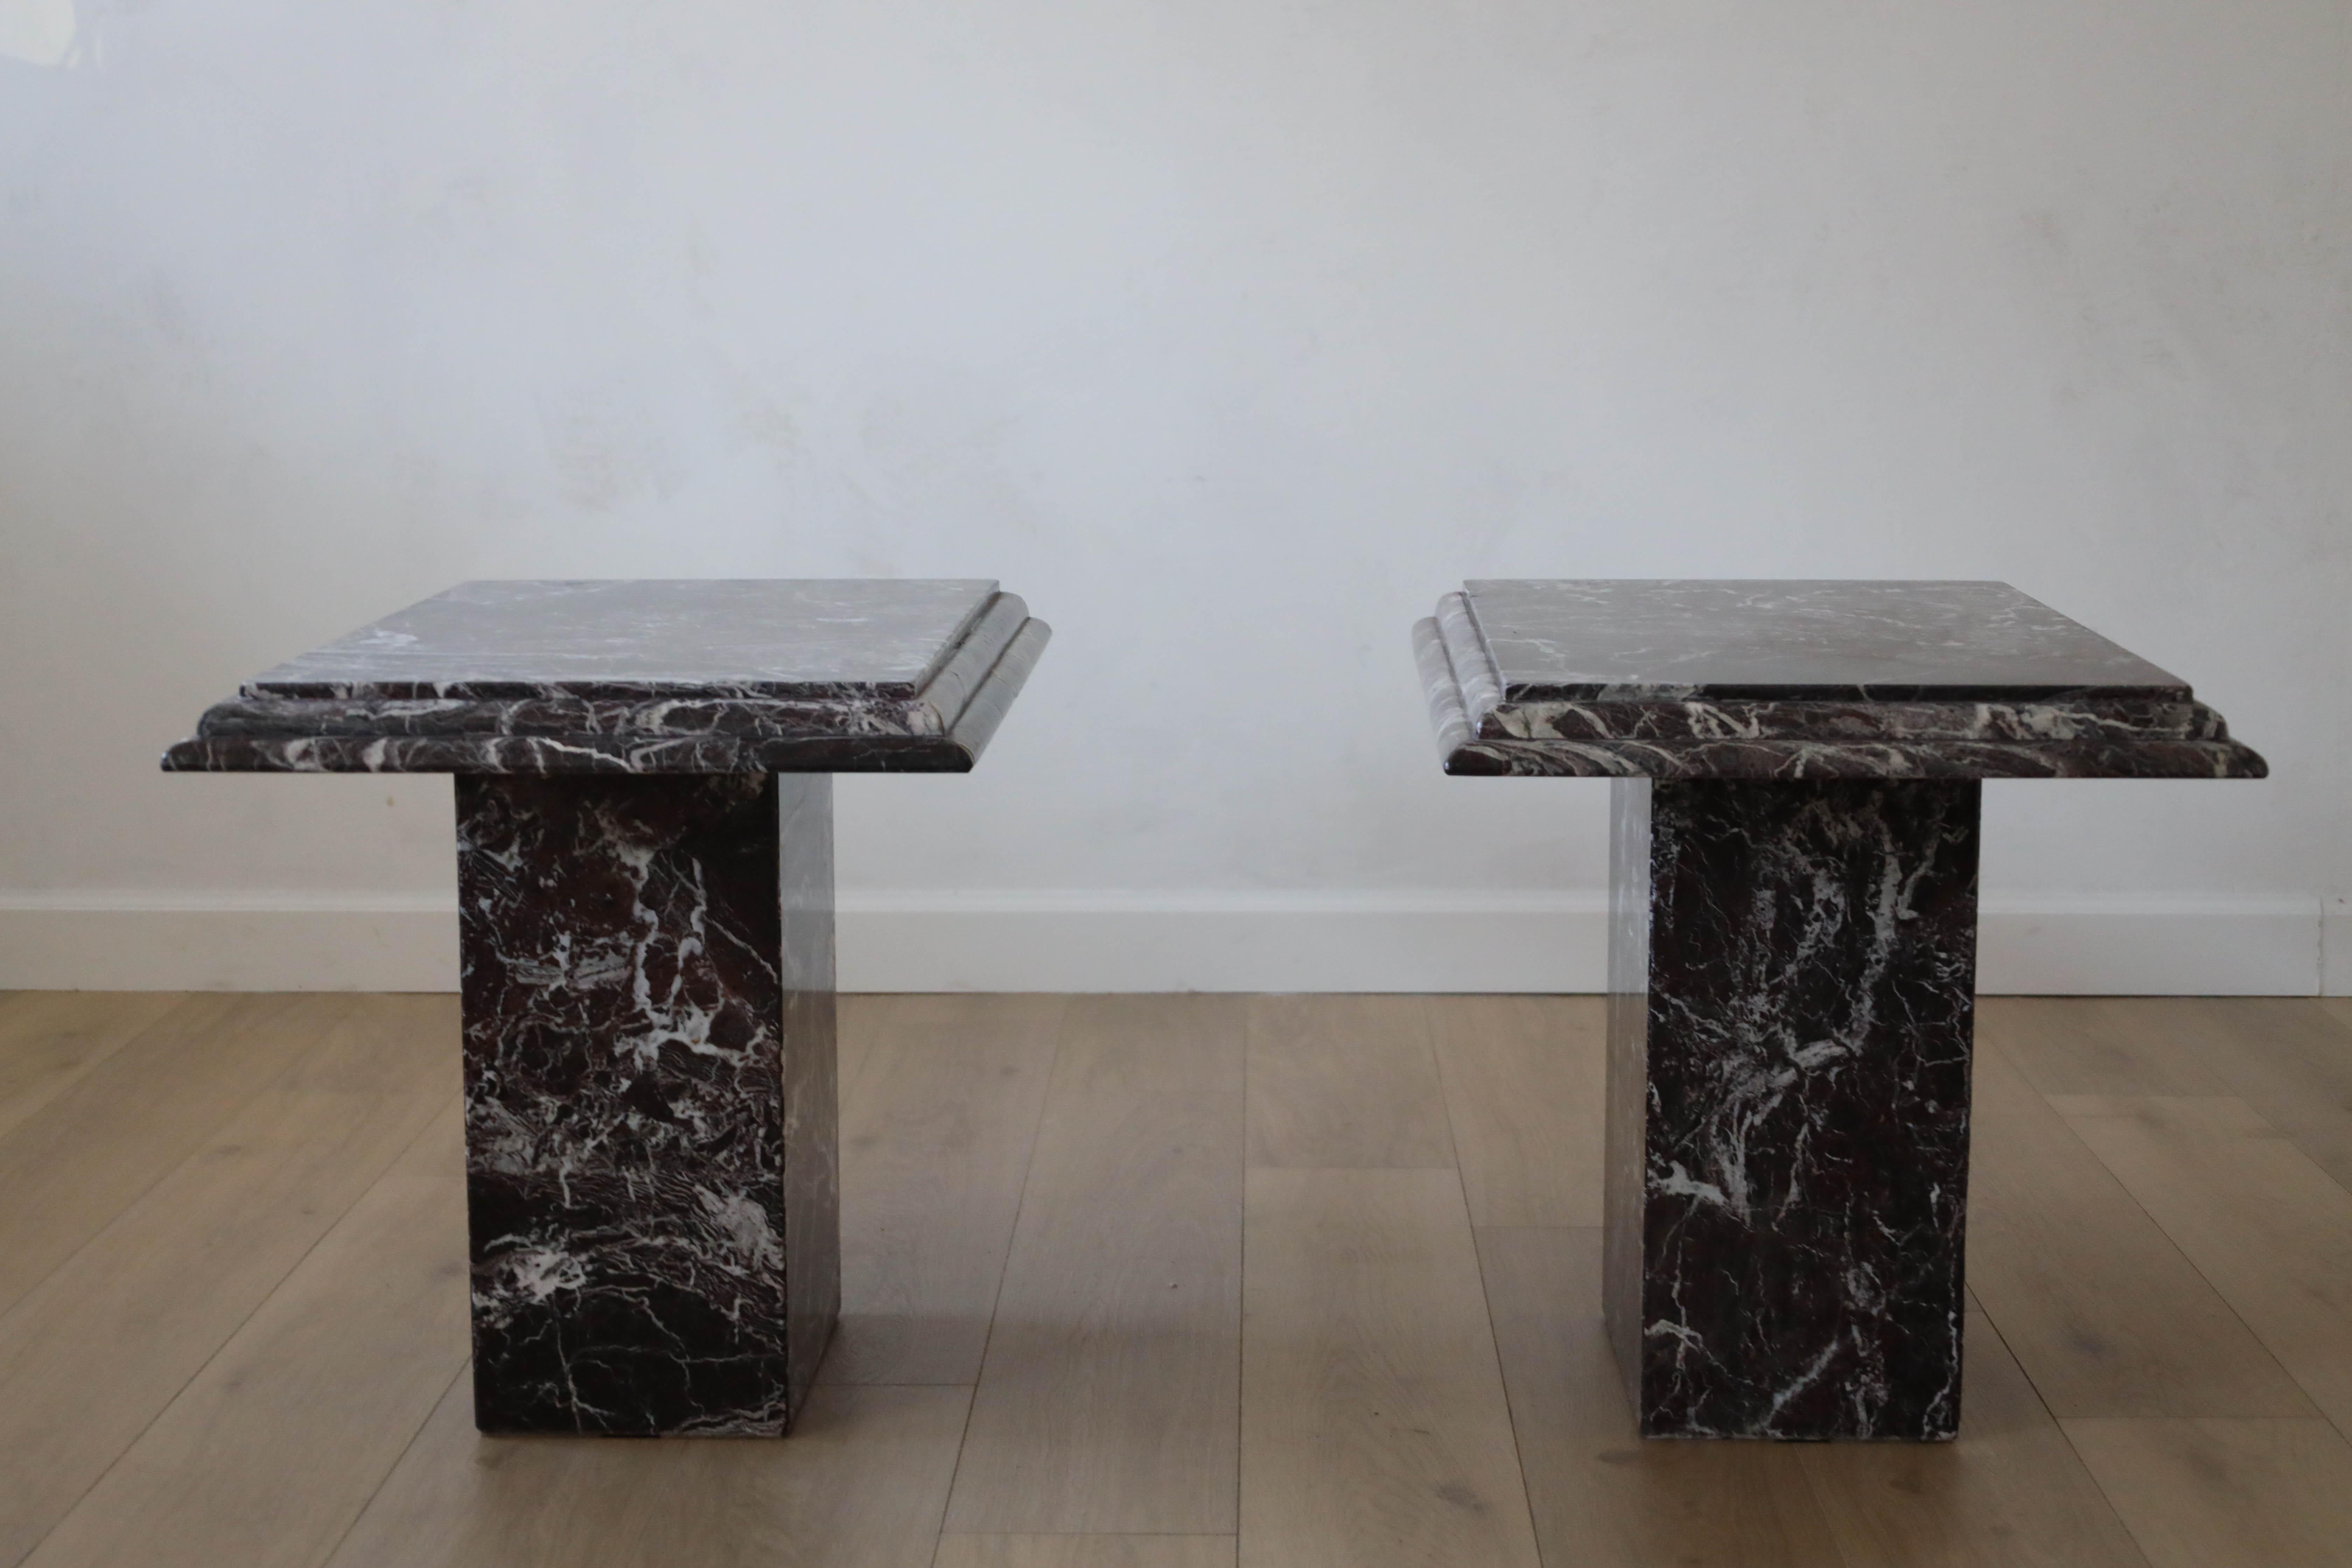 Paire de tables d'appoint en marbre italien Rosso Levanto, veiné de bordeaux, de blanc et de noir. Ces tables ont été fabriquées sur mesure en Italie dans les années 1960-70. Ils sont dotés d'un socle et d'un plateau amovible. Les bords superposés